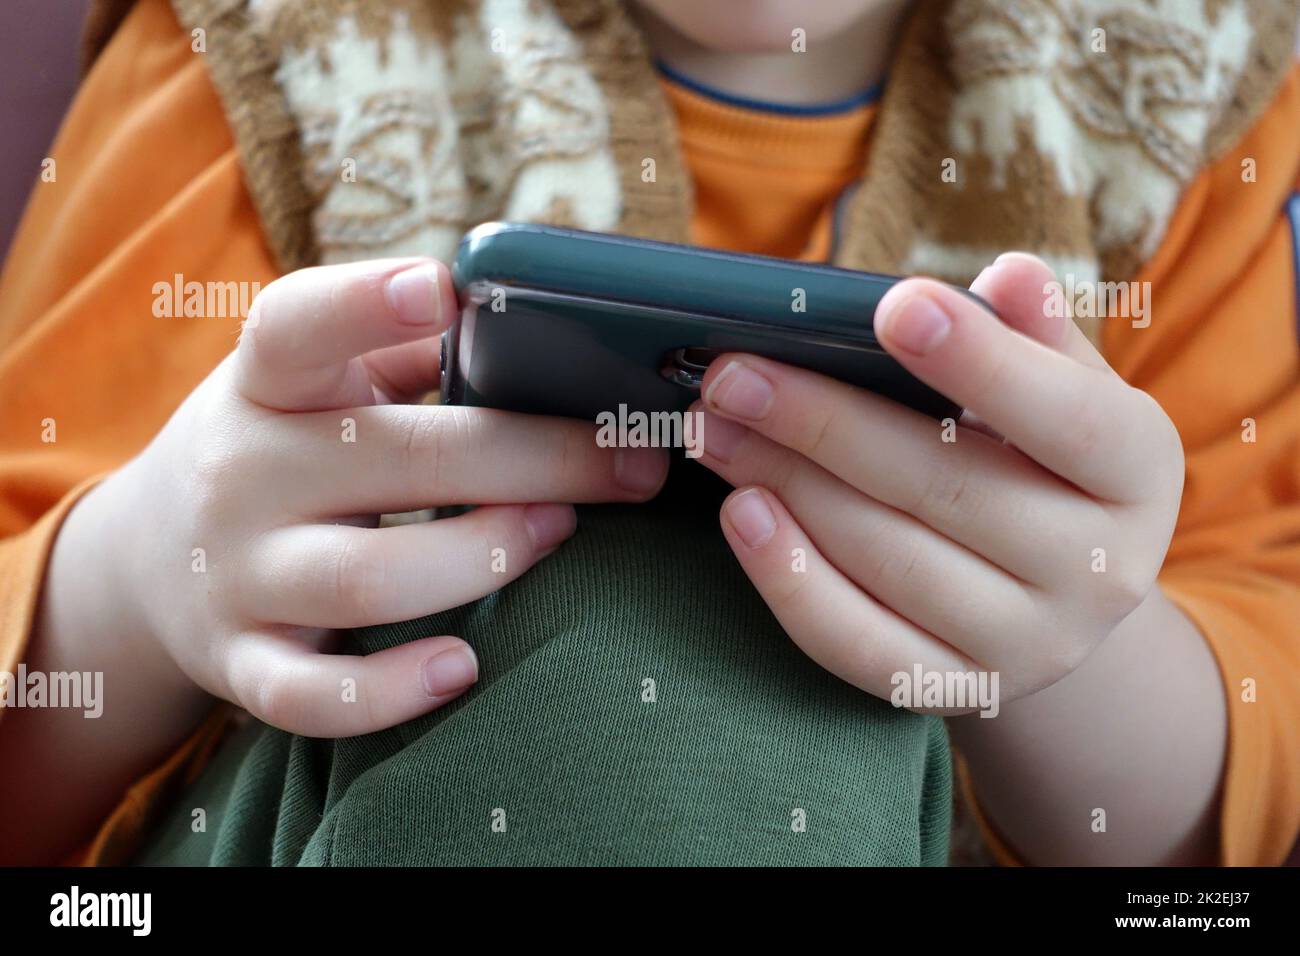 primo piano di un bambino che gioca con uno smartphone, primo piano della mano e del telefono cellulare Foto Stock